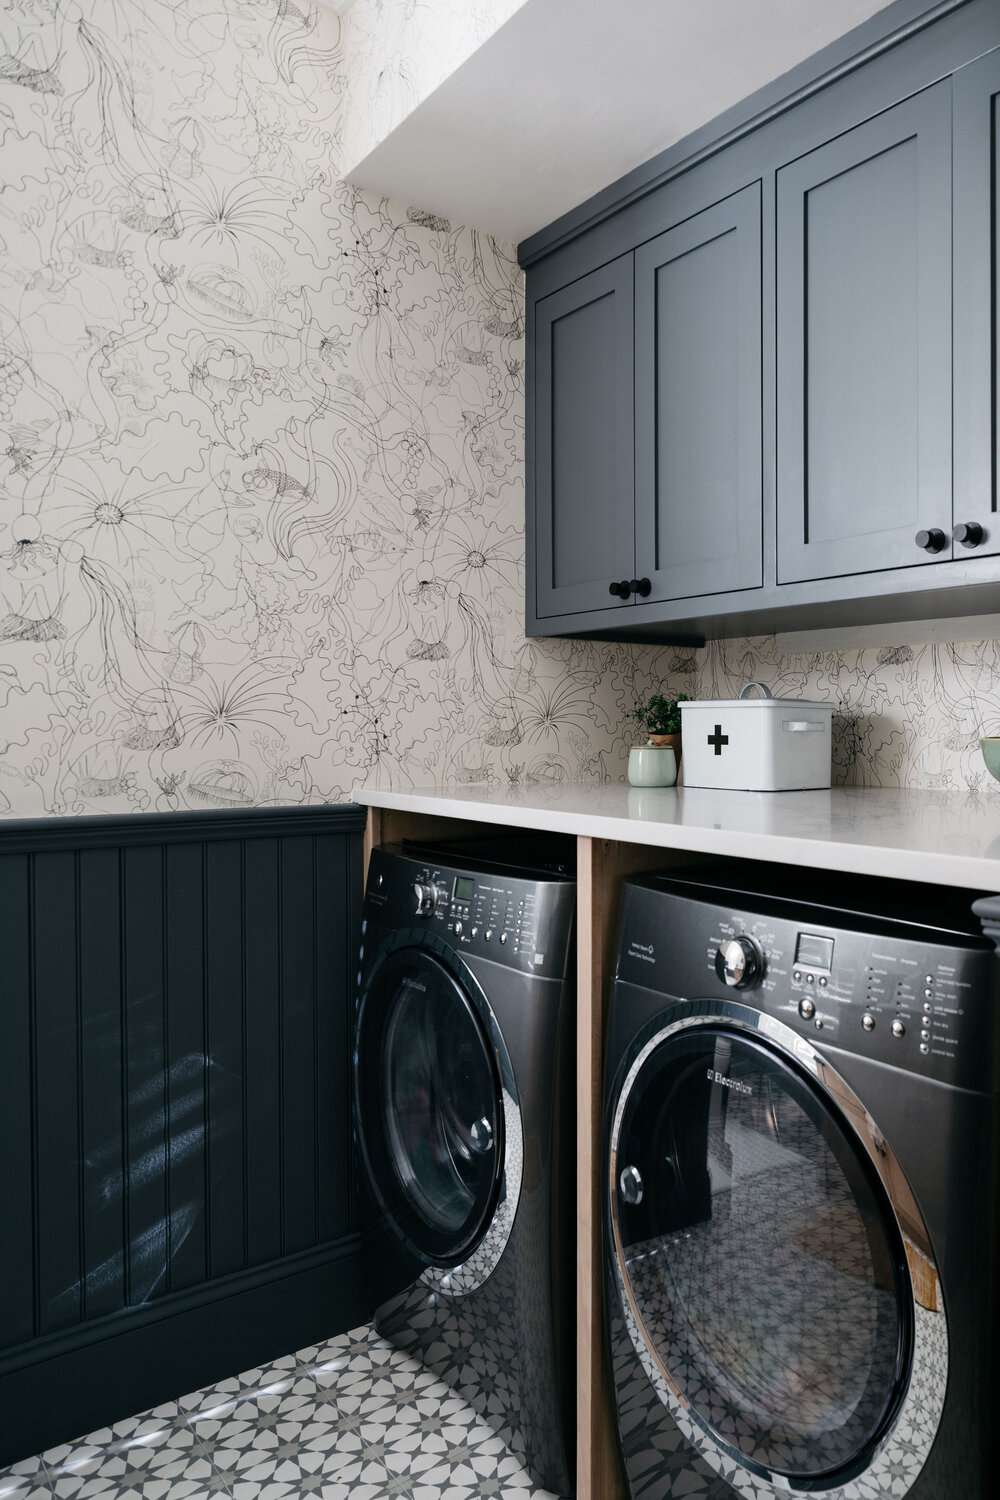 Waschküche mit Perlenpappe auf der unteren Hälfte und Tapete auf der oberen Hälfte der Wand